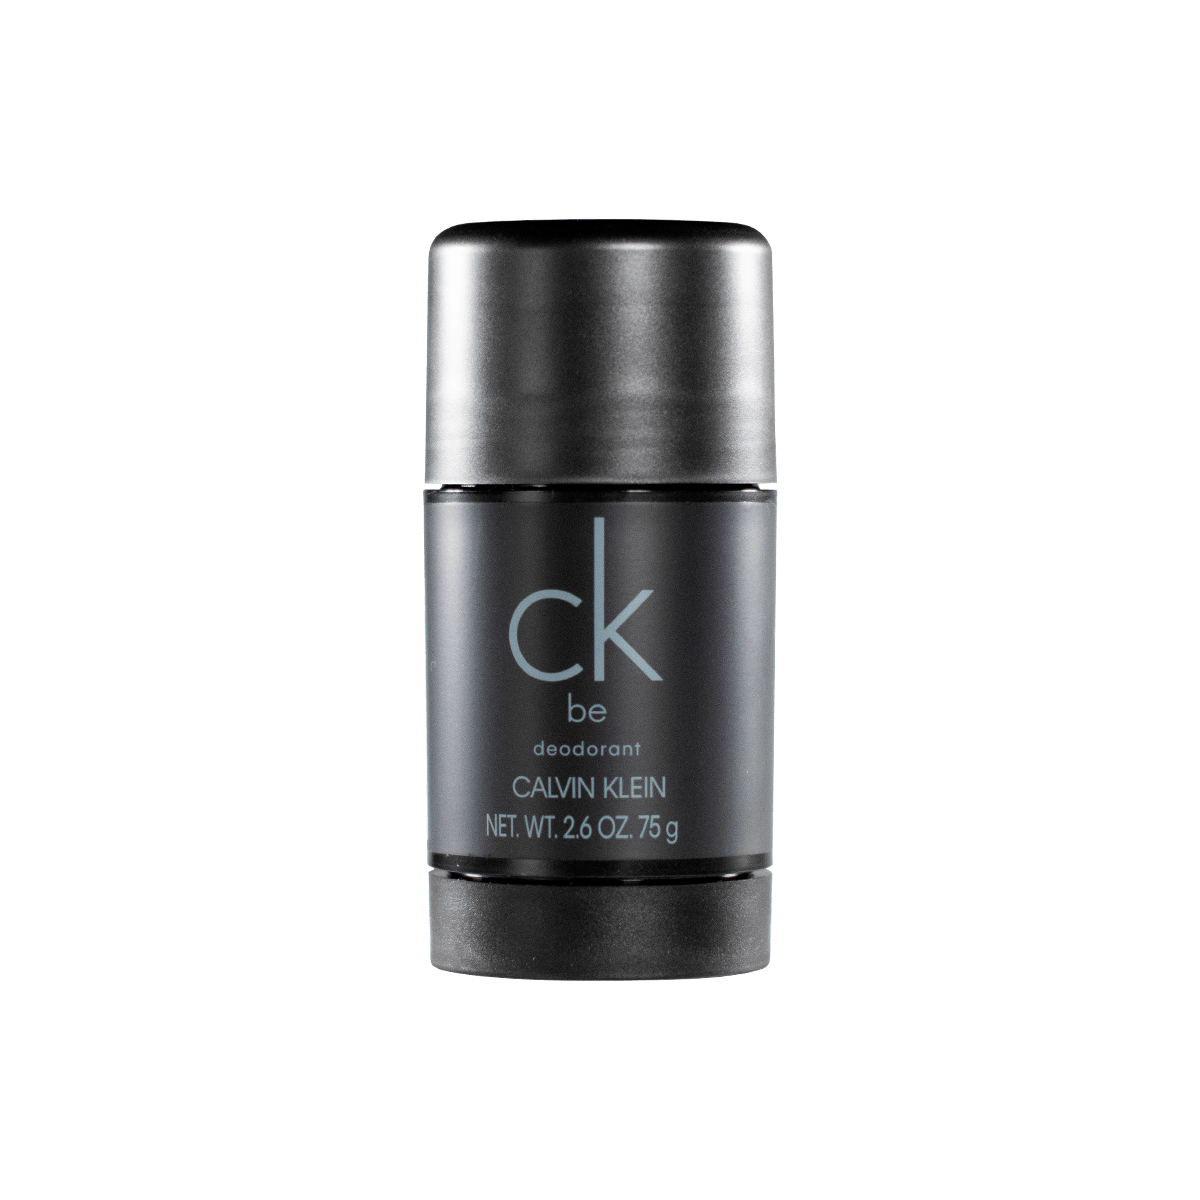 Læge Gå ned Charles Keasing Køb Calvin Klein CK Be Deodorant Stick - 75 ml. hos Med24.dk